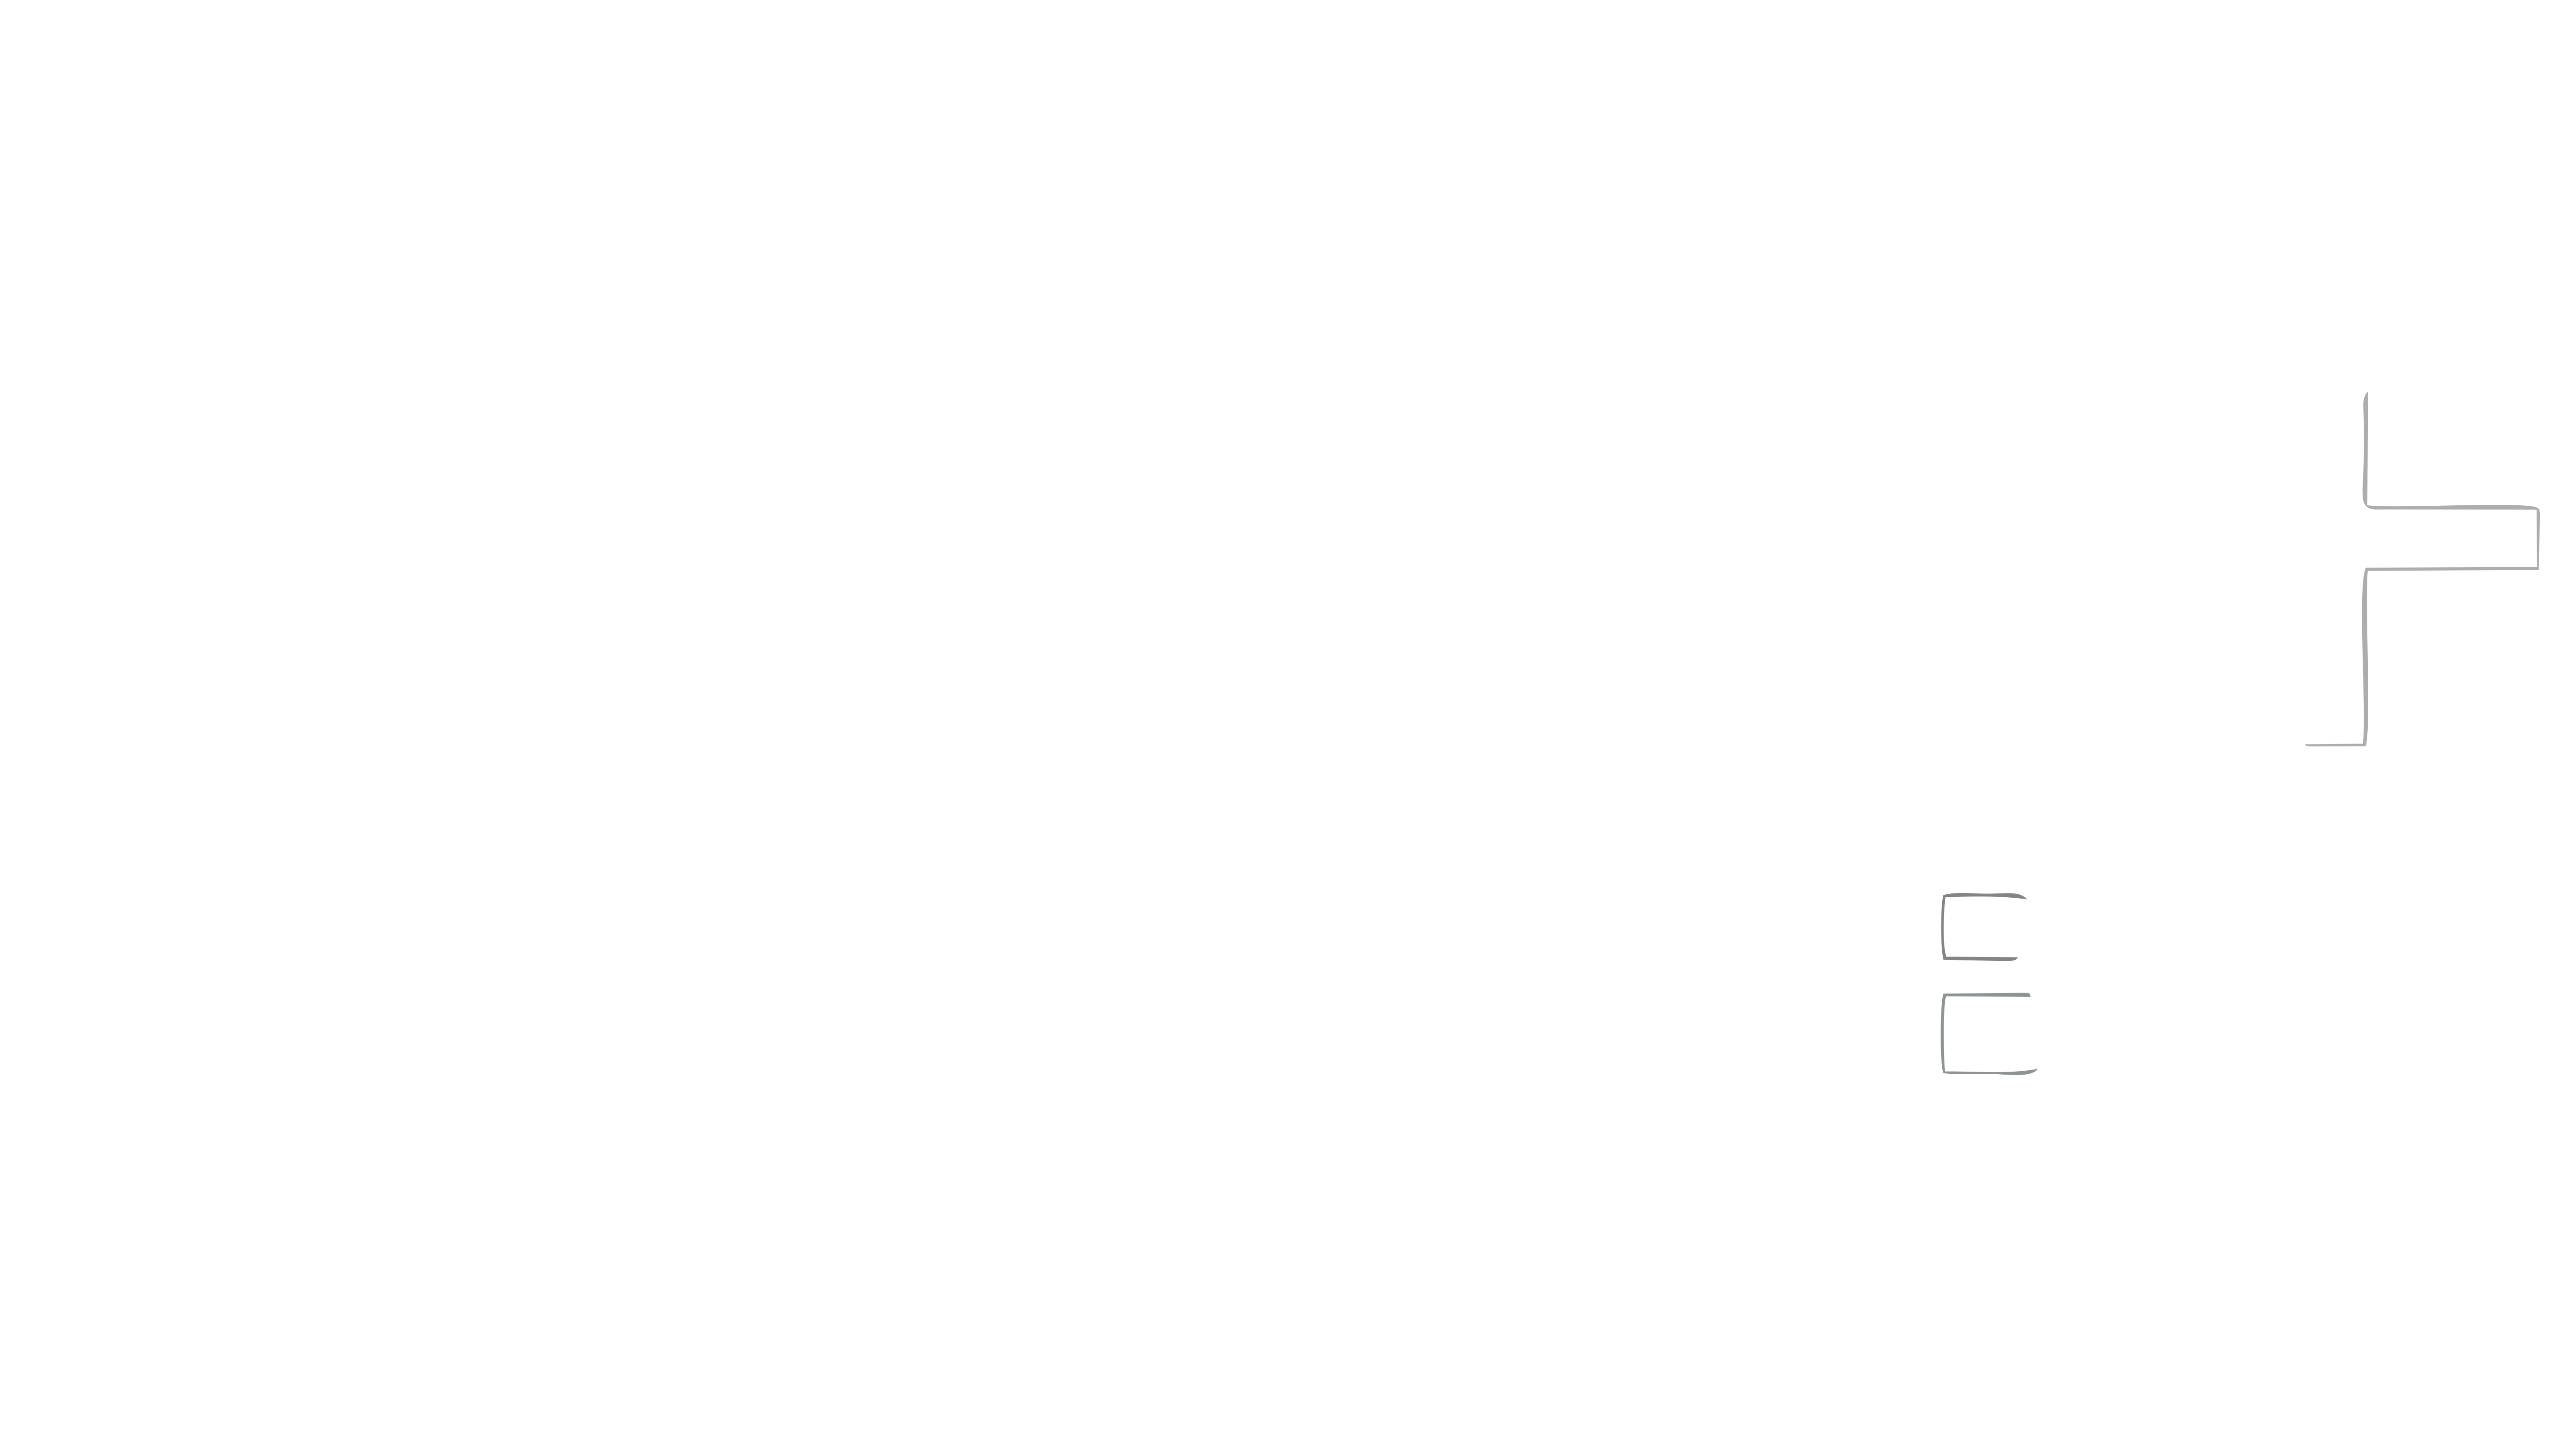 crdf1